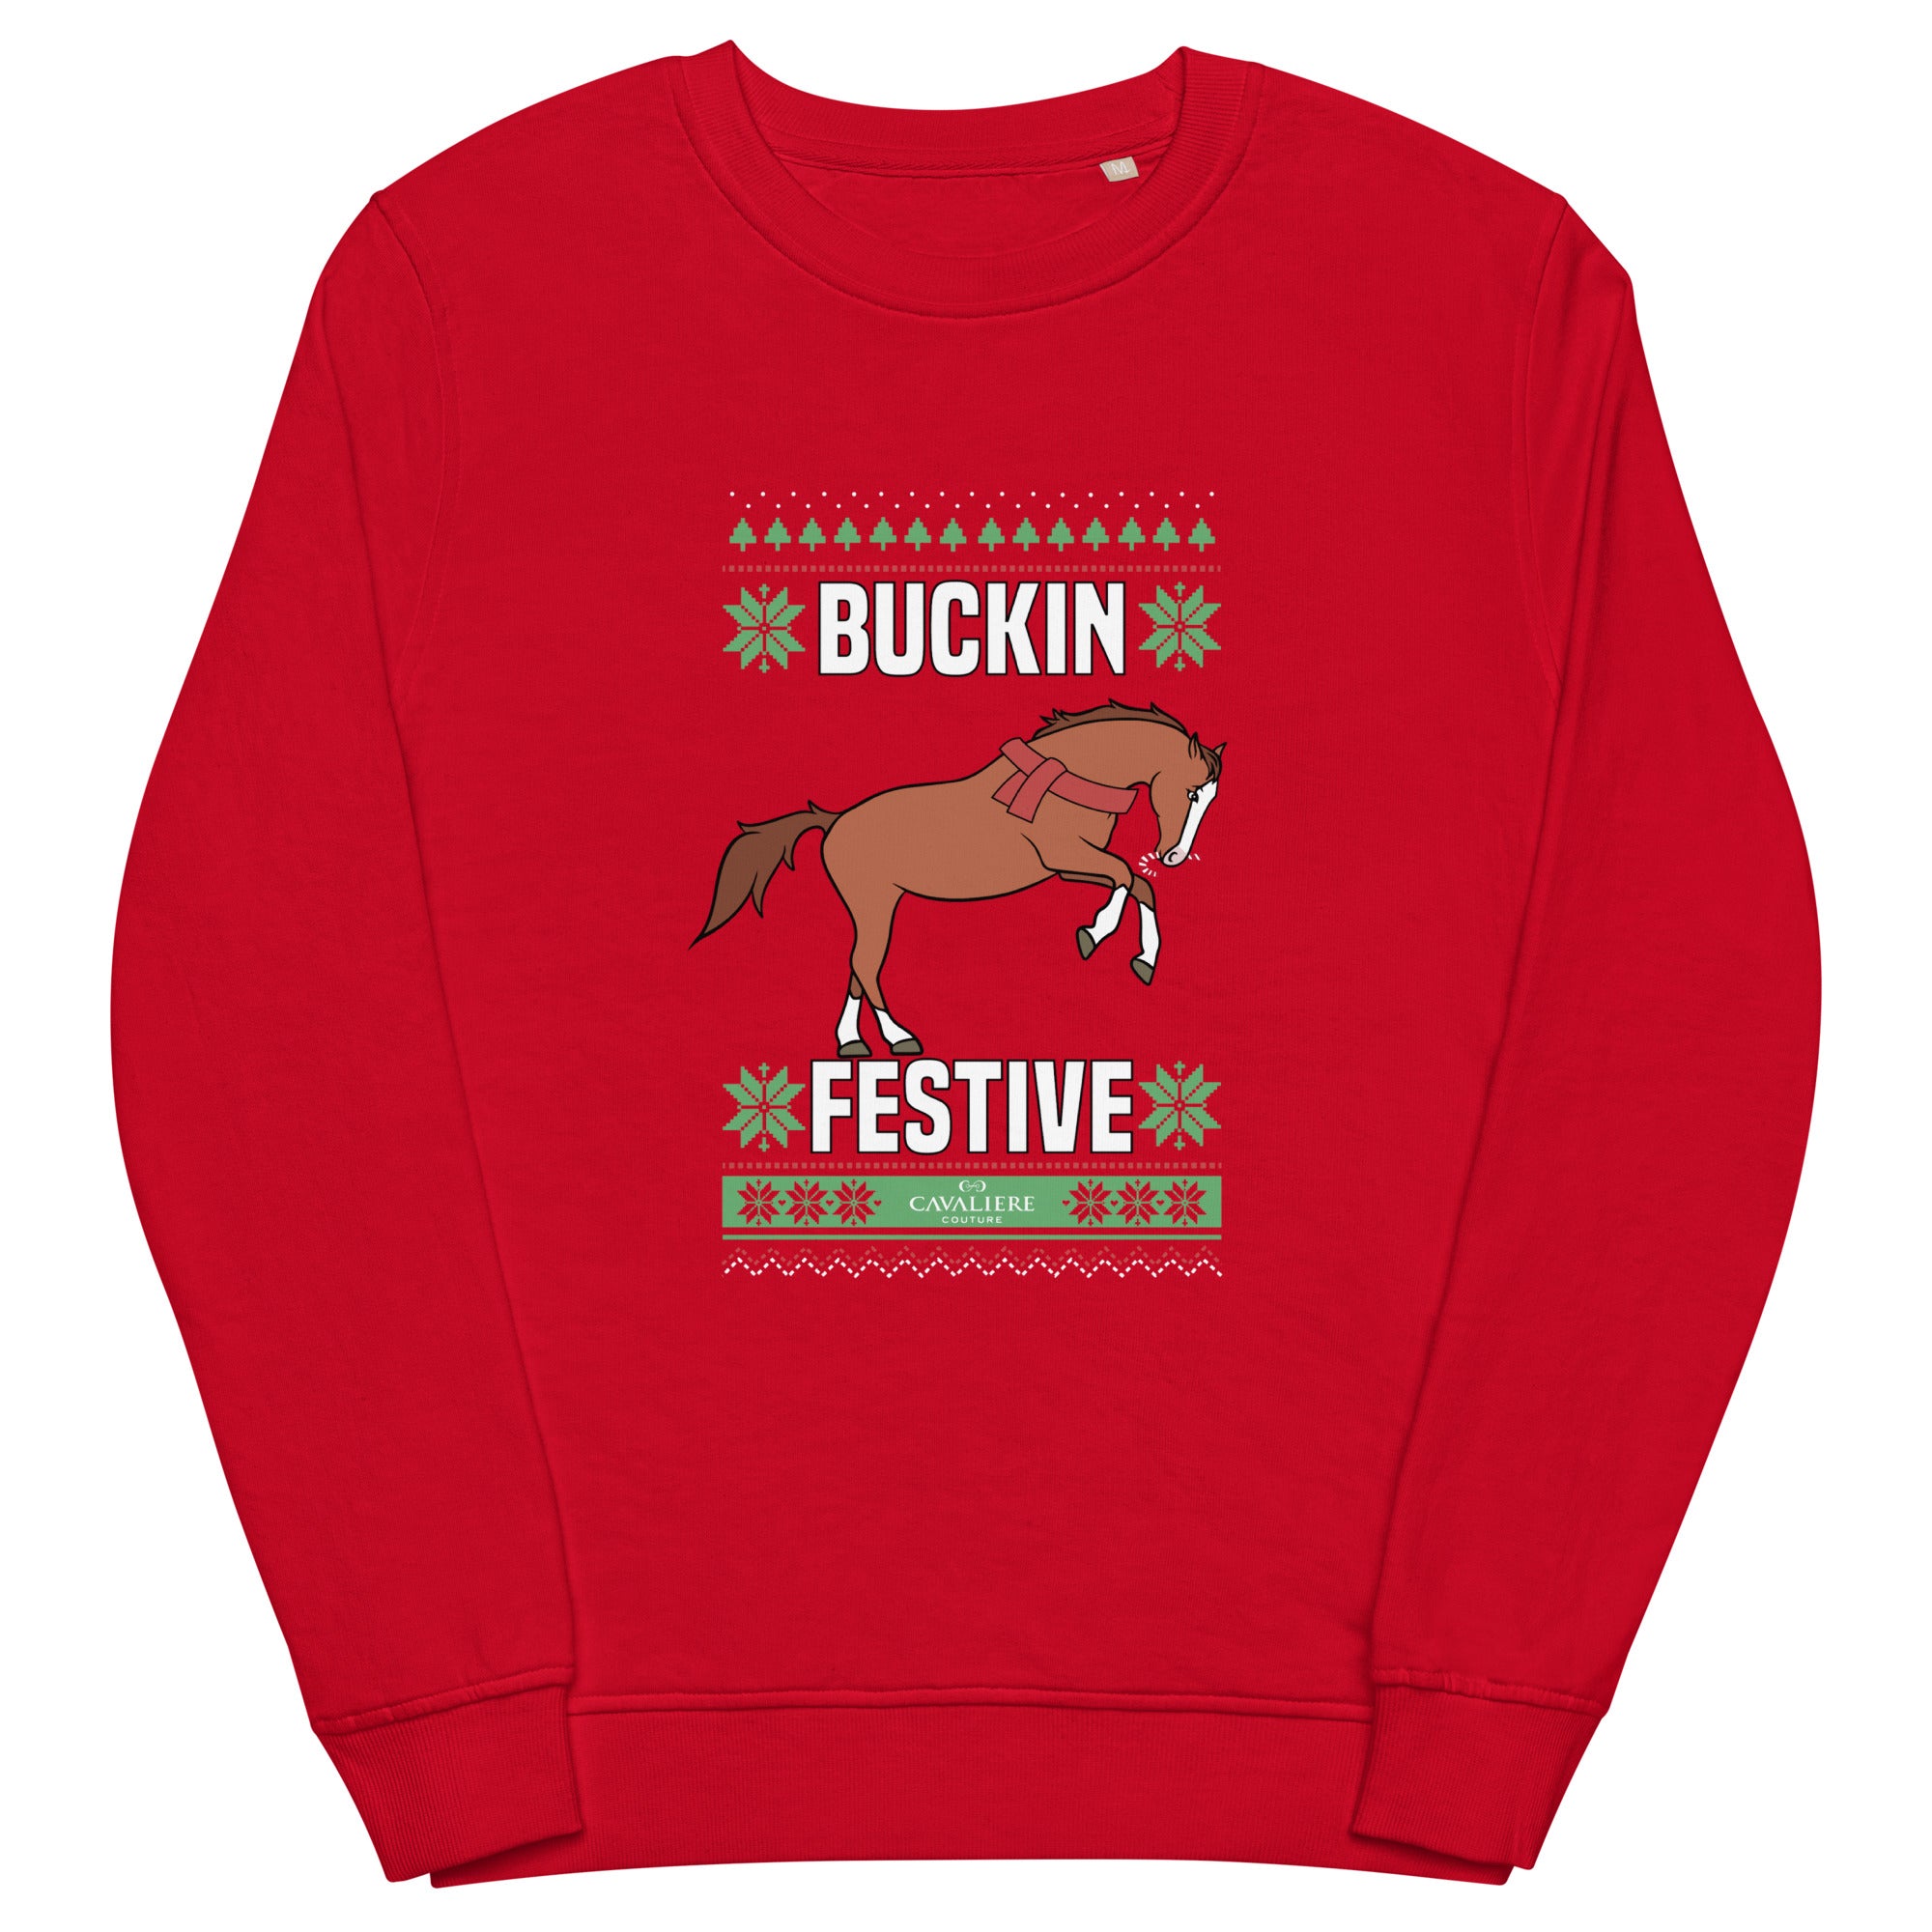 Buckin' Festive Ugly Sweater